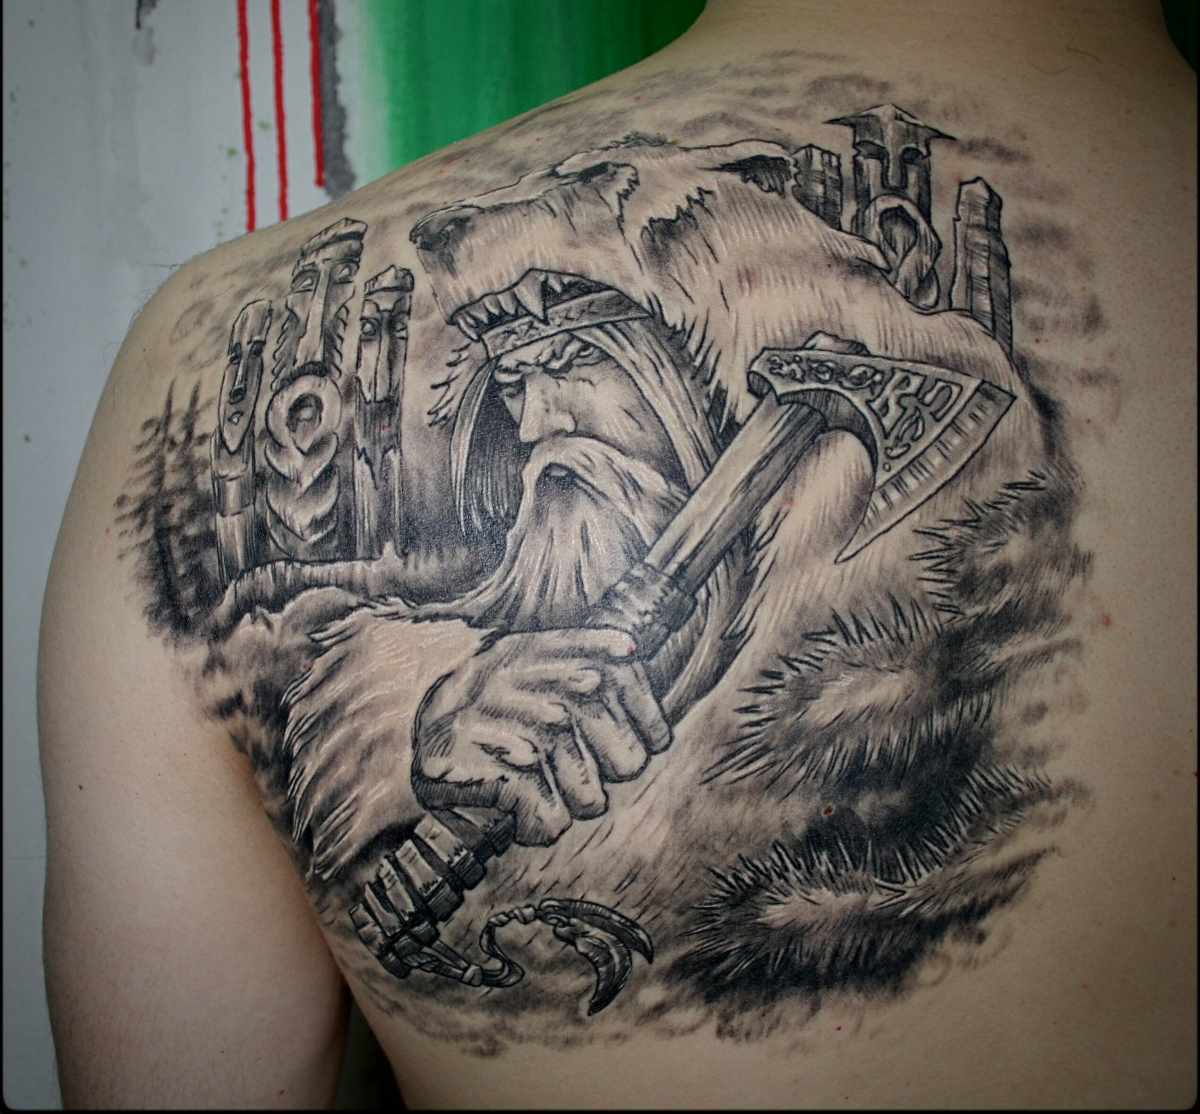 Татуировка славянского бога Велеса